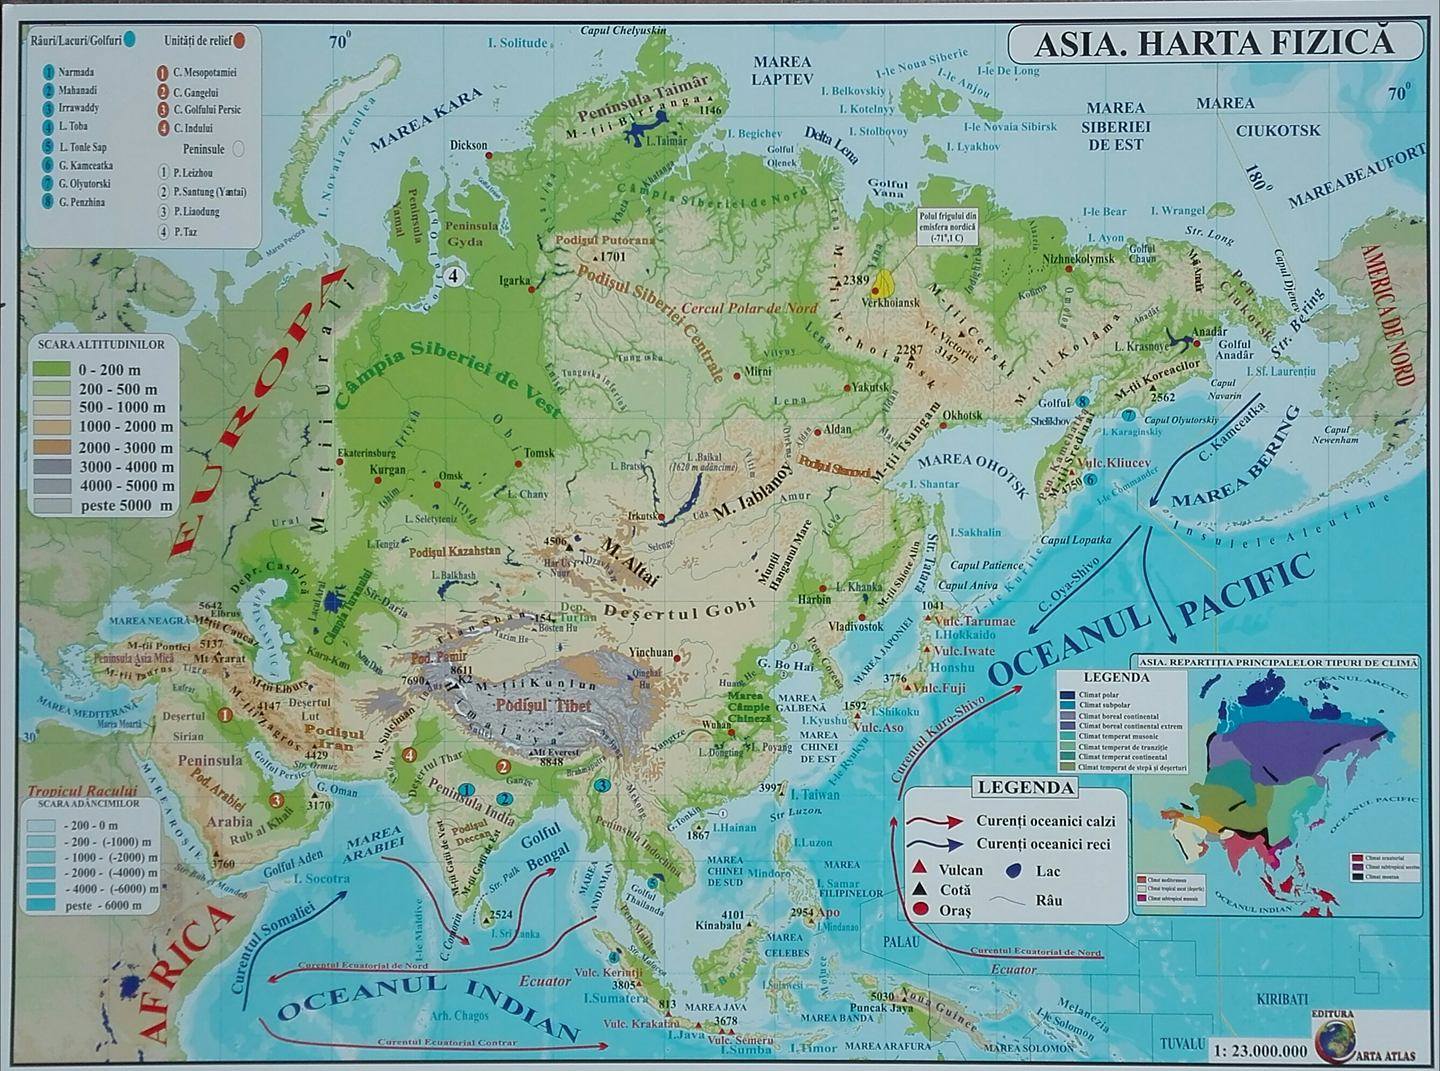 harta fizica a asiei